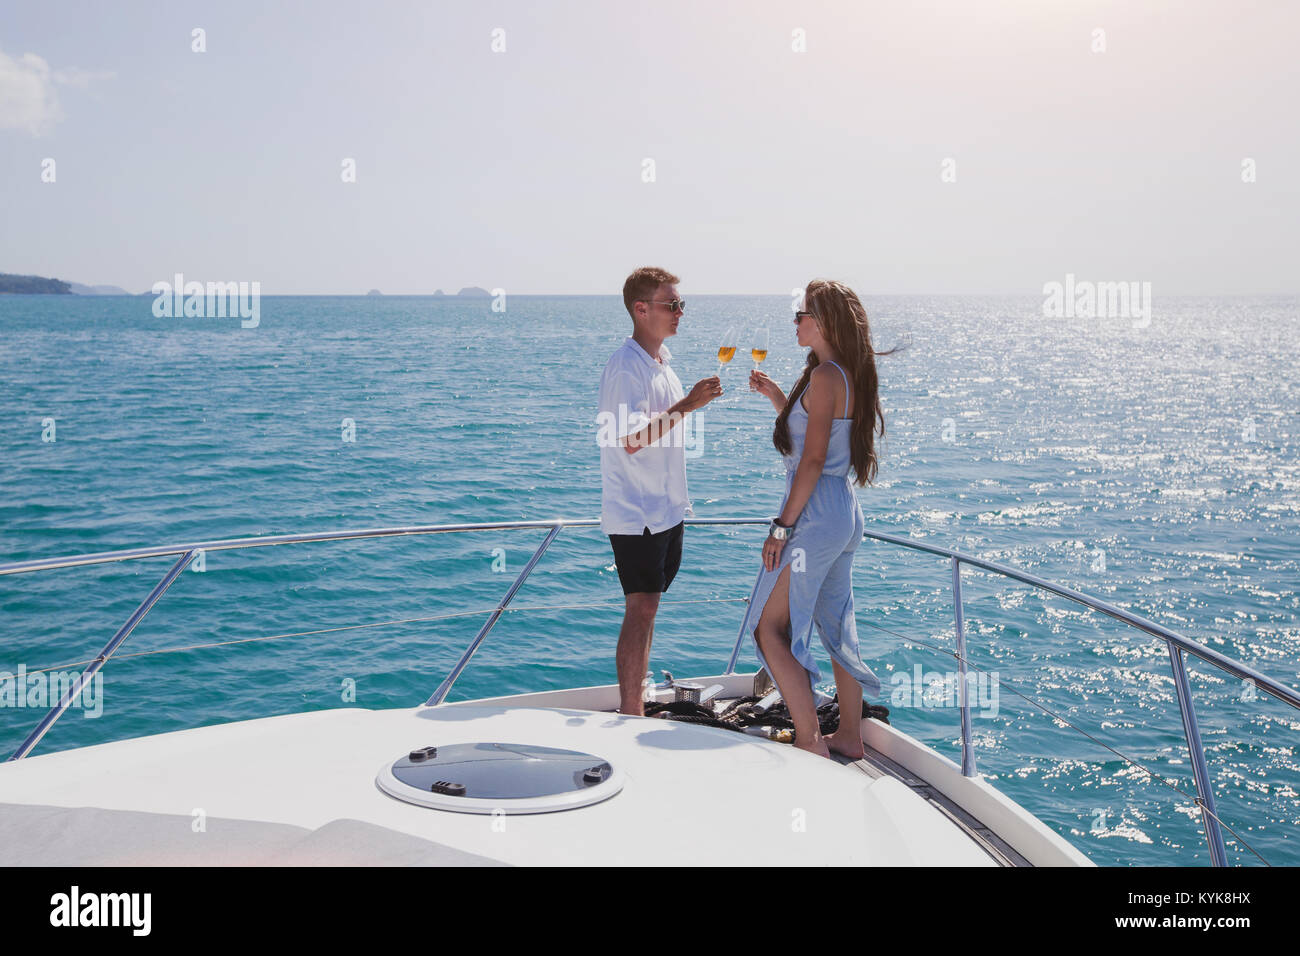 couple drinking champange on luxury yacht on cruise, luxurious lifestyle Stock Photo